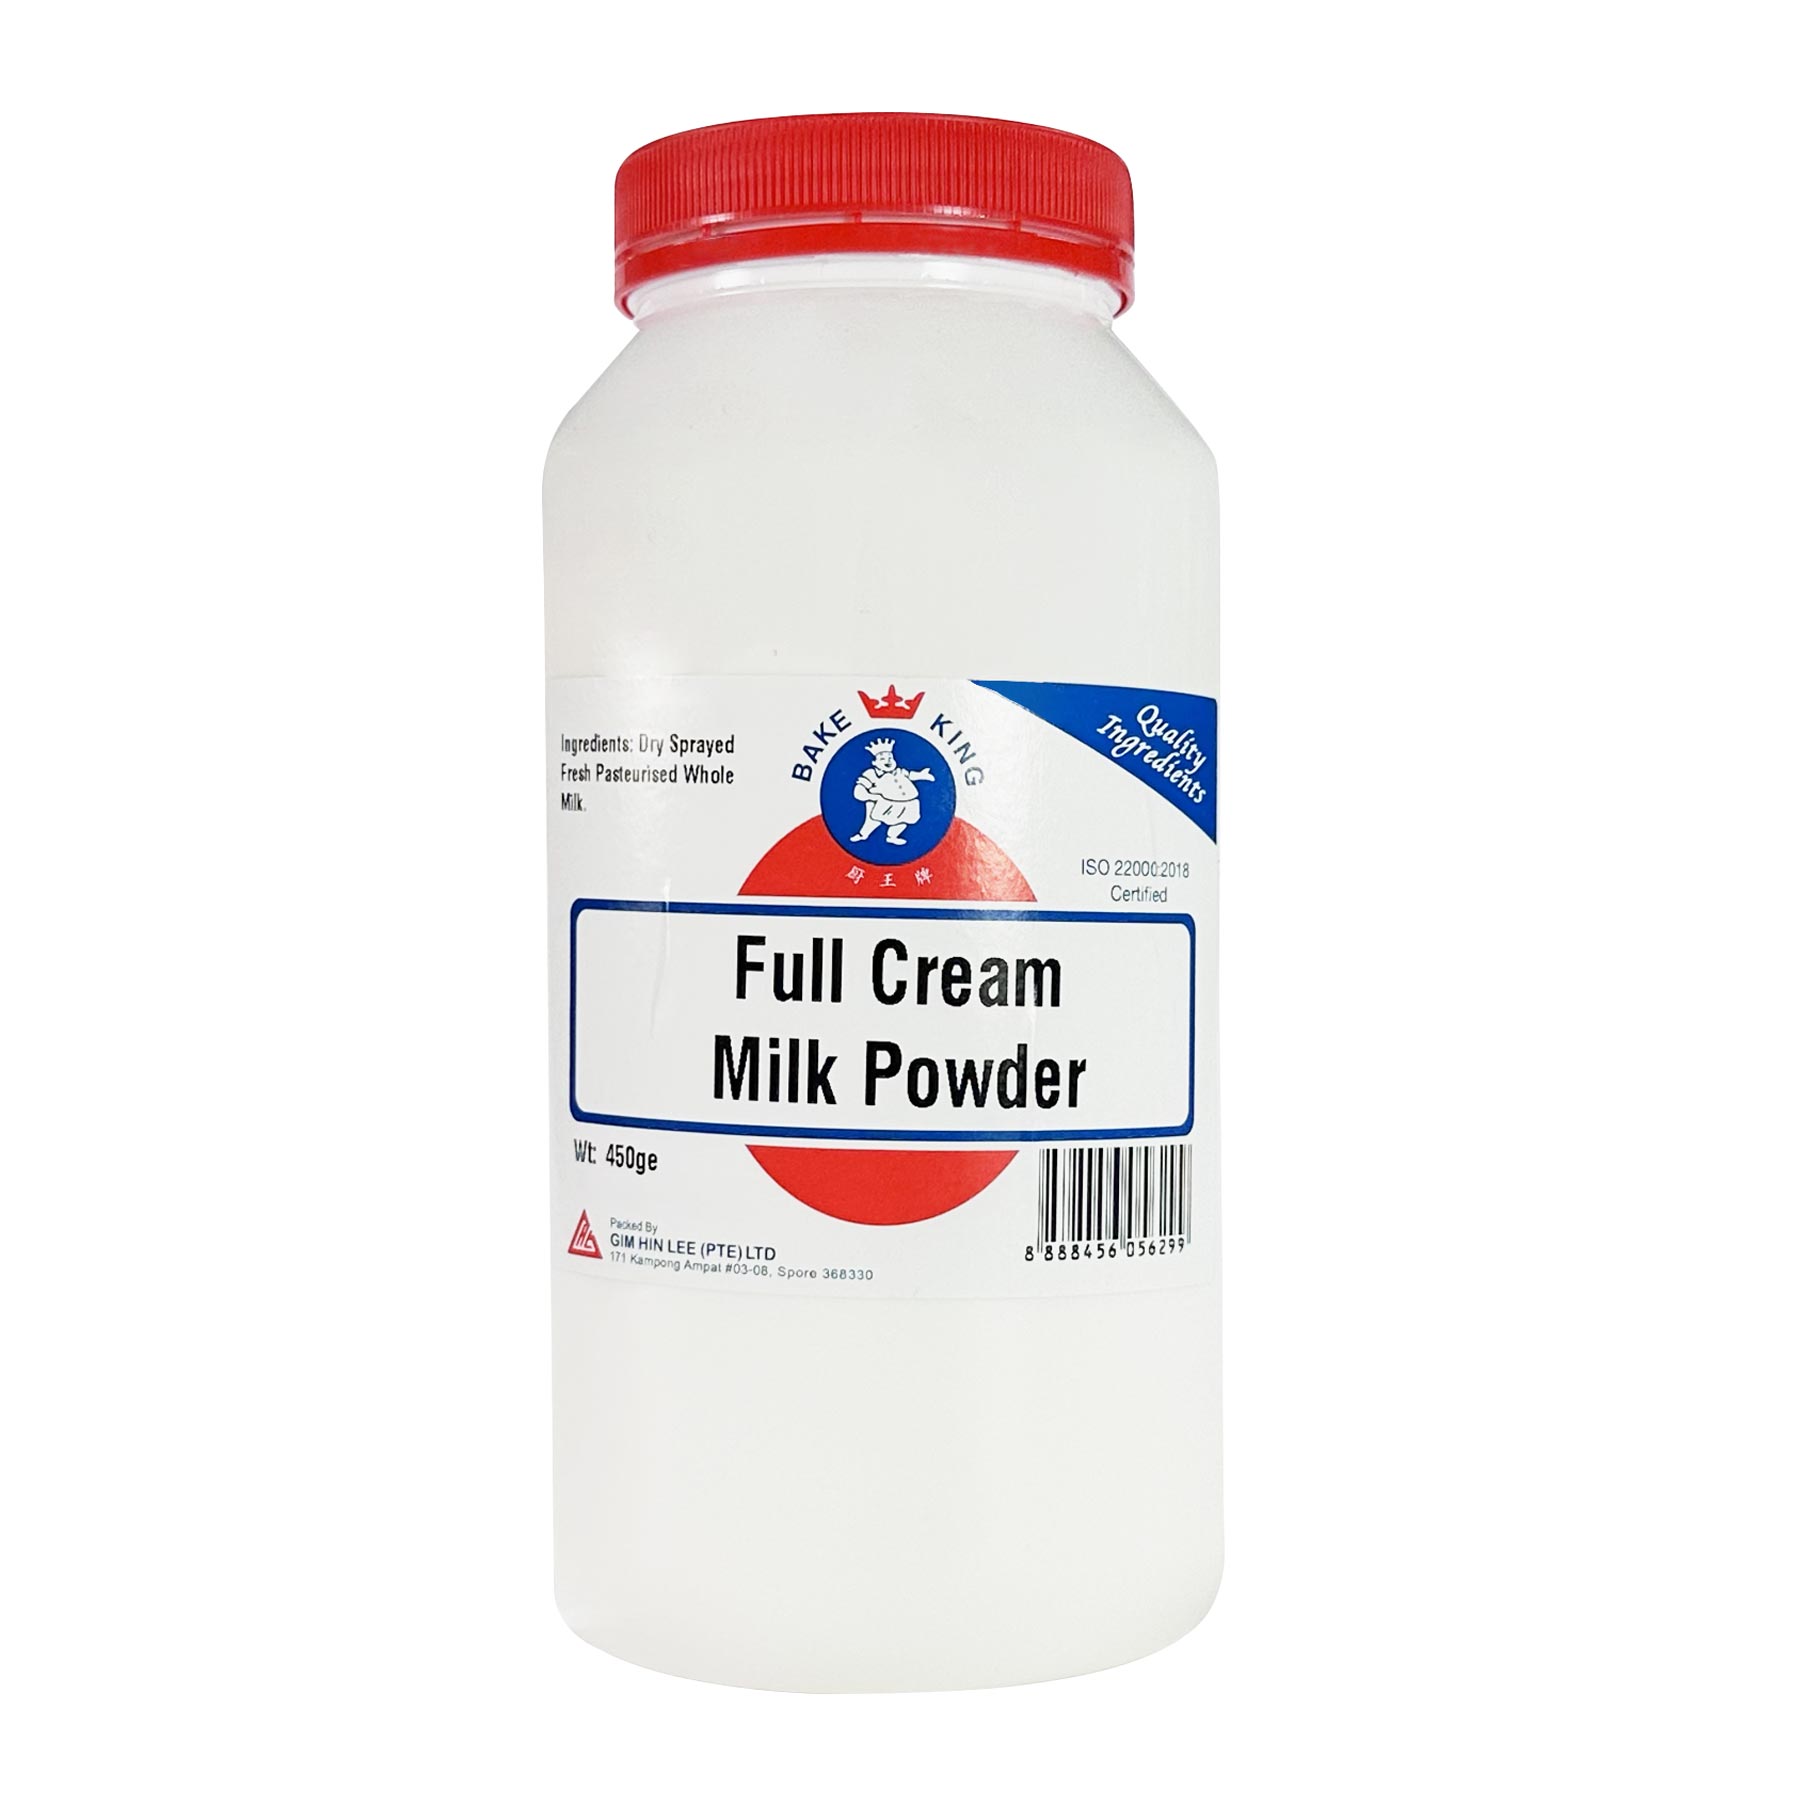 bake-king-full-cream-milk-powder-450g-new